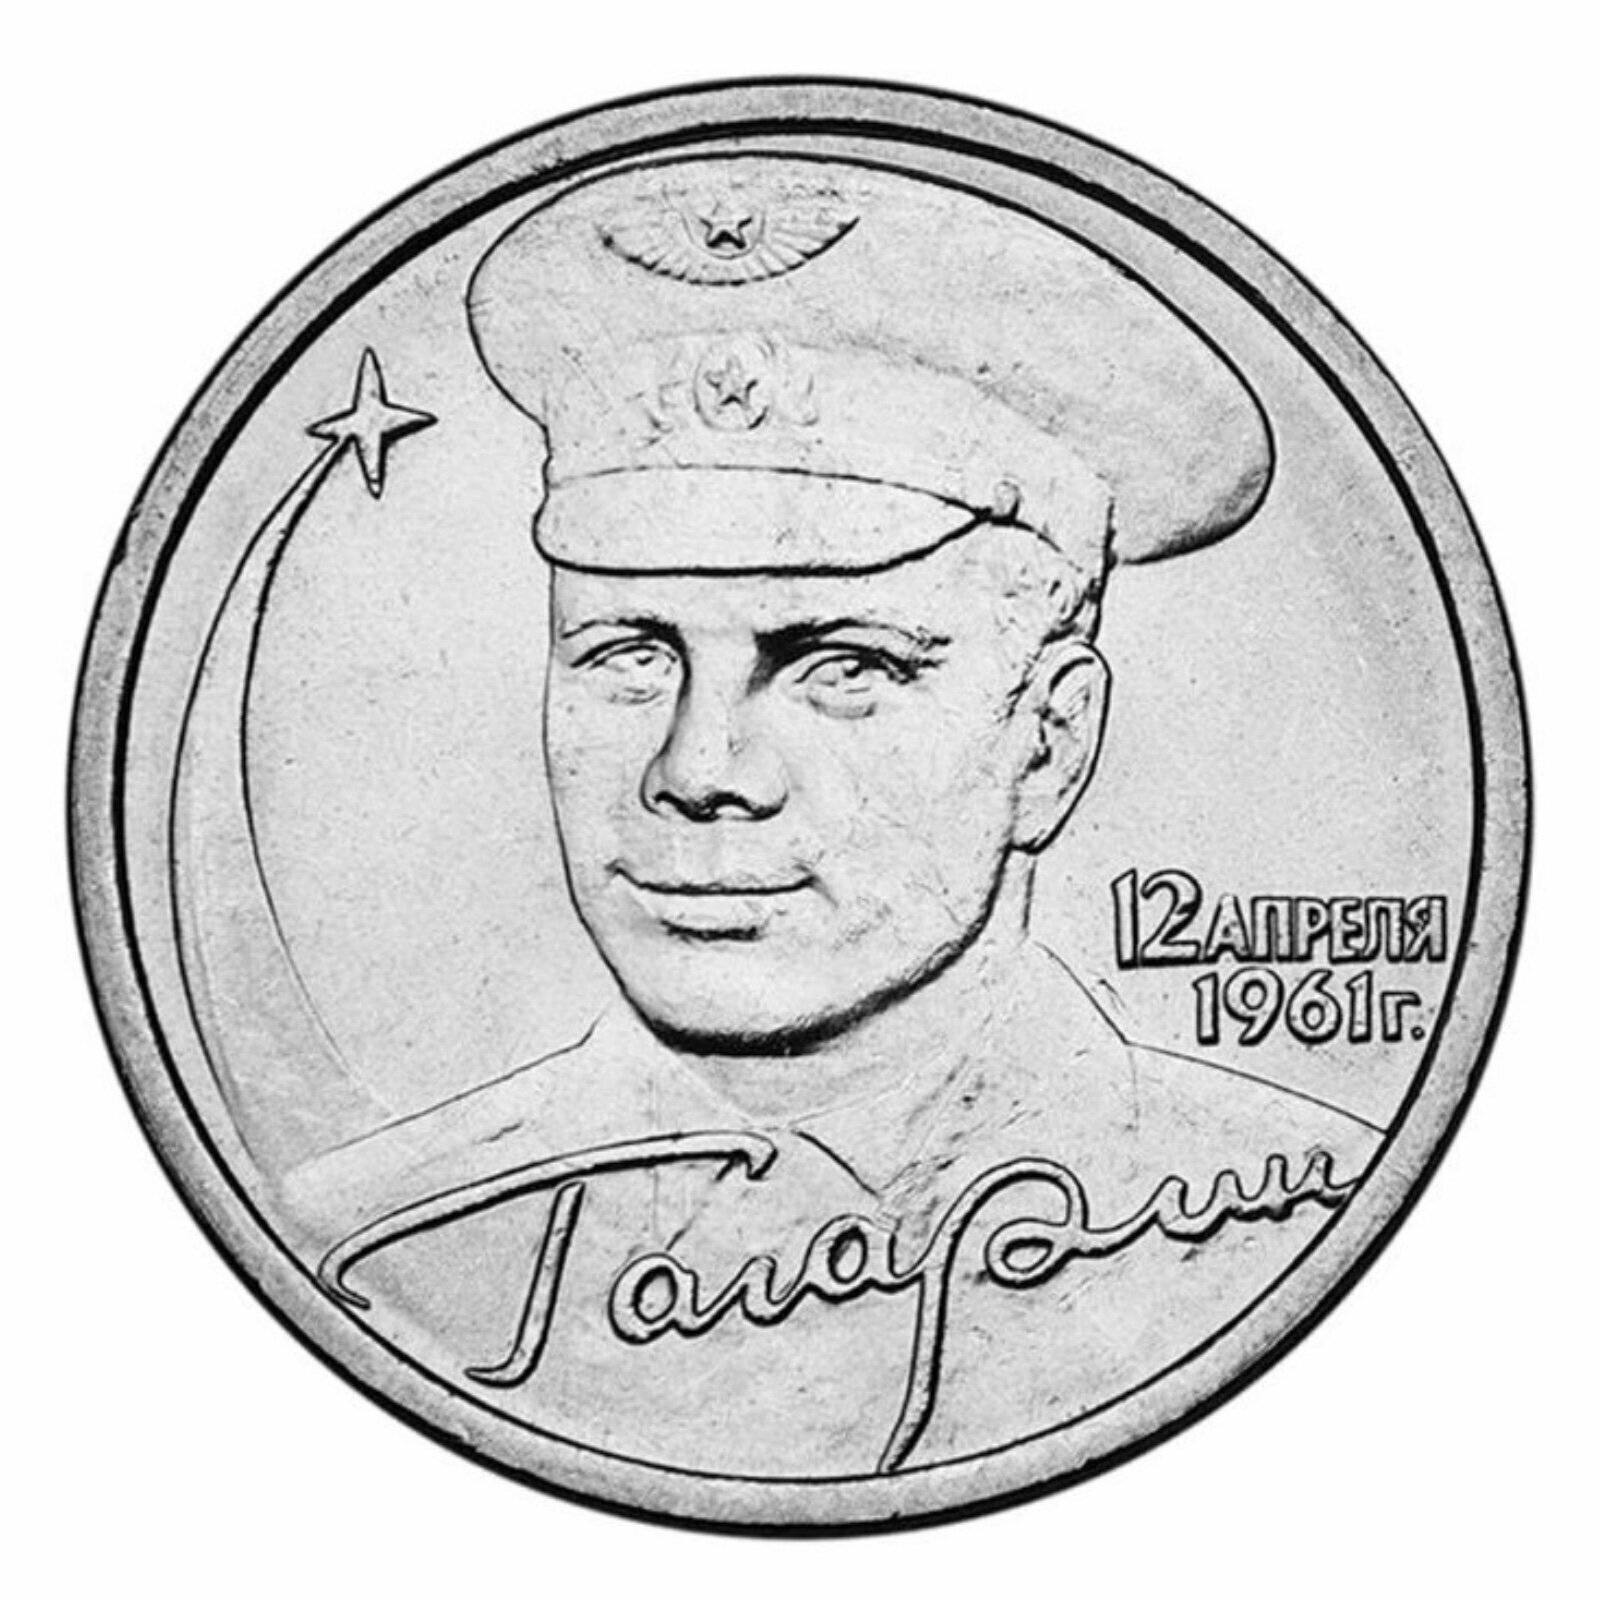 Монета 2 рубля Гагарин Ю. А, 40-летие космического полета. СПМД, Россия, 2001 г. в. Состояние UNC (из мешка)